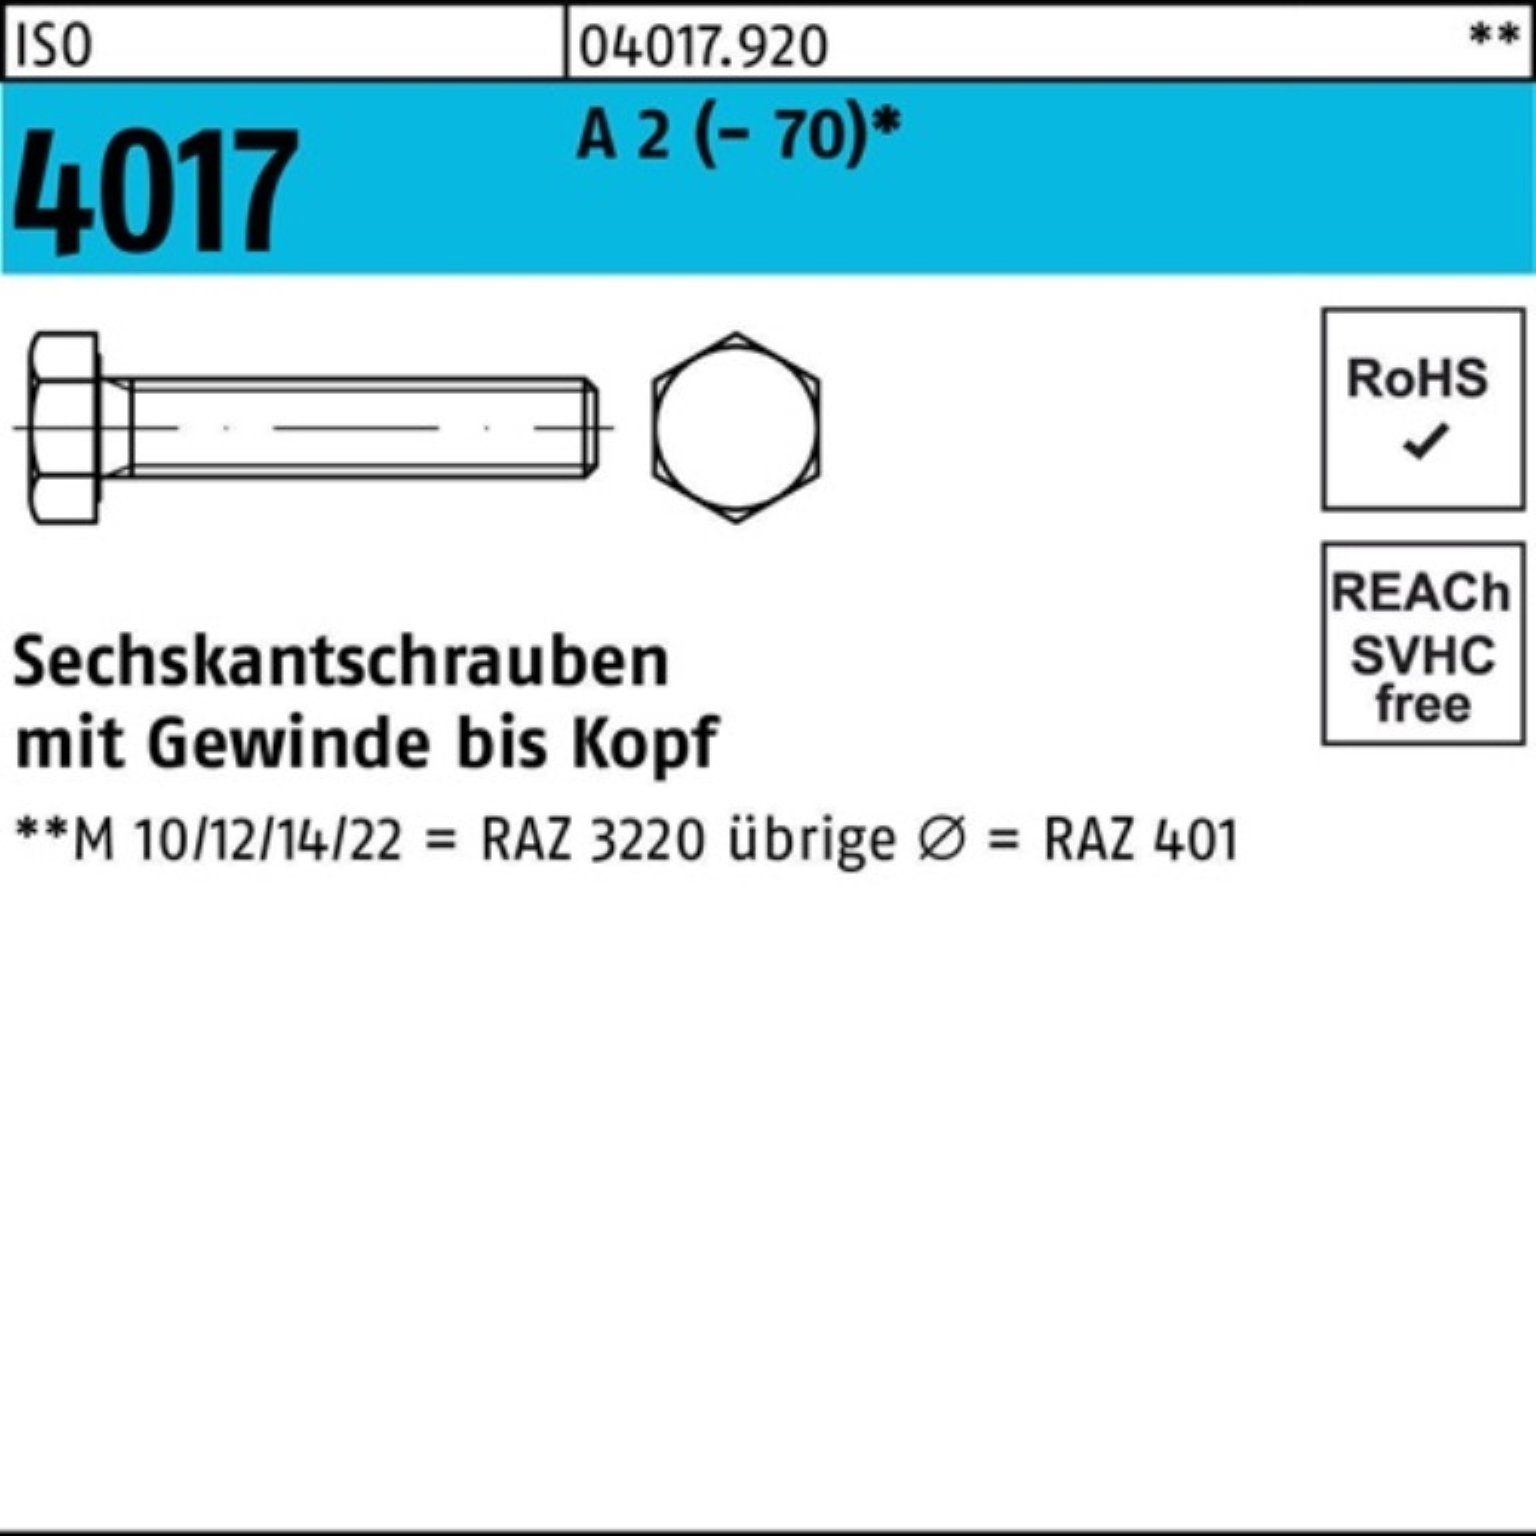 Bufab Sechskantschraube 100er Pack Sechskantschraube ISO 4017 VG M24x 110 A 2 (70) 1 Stück